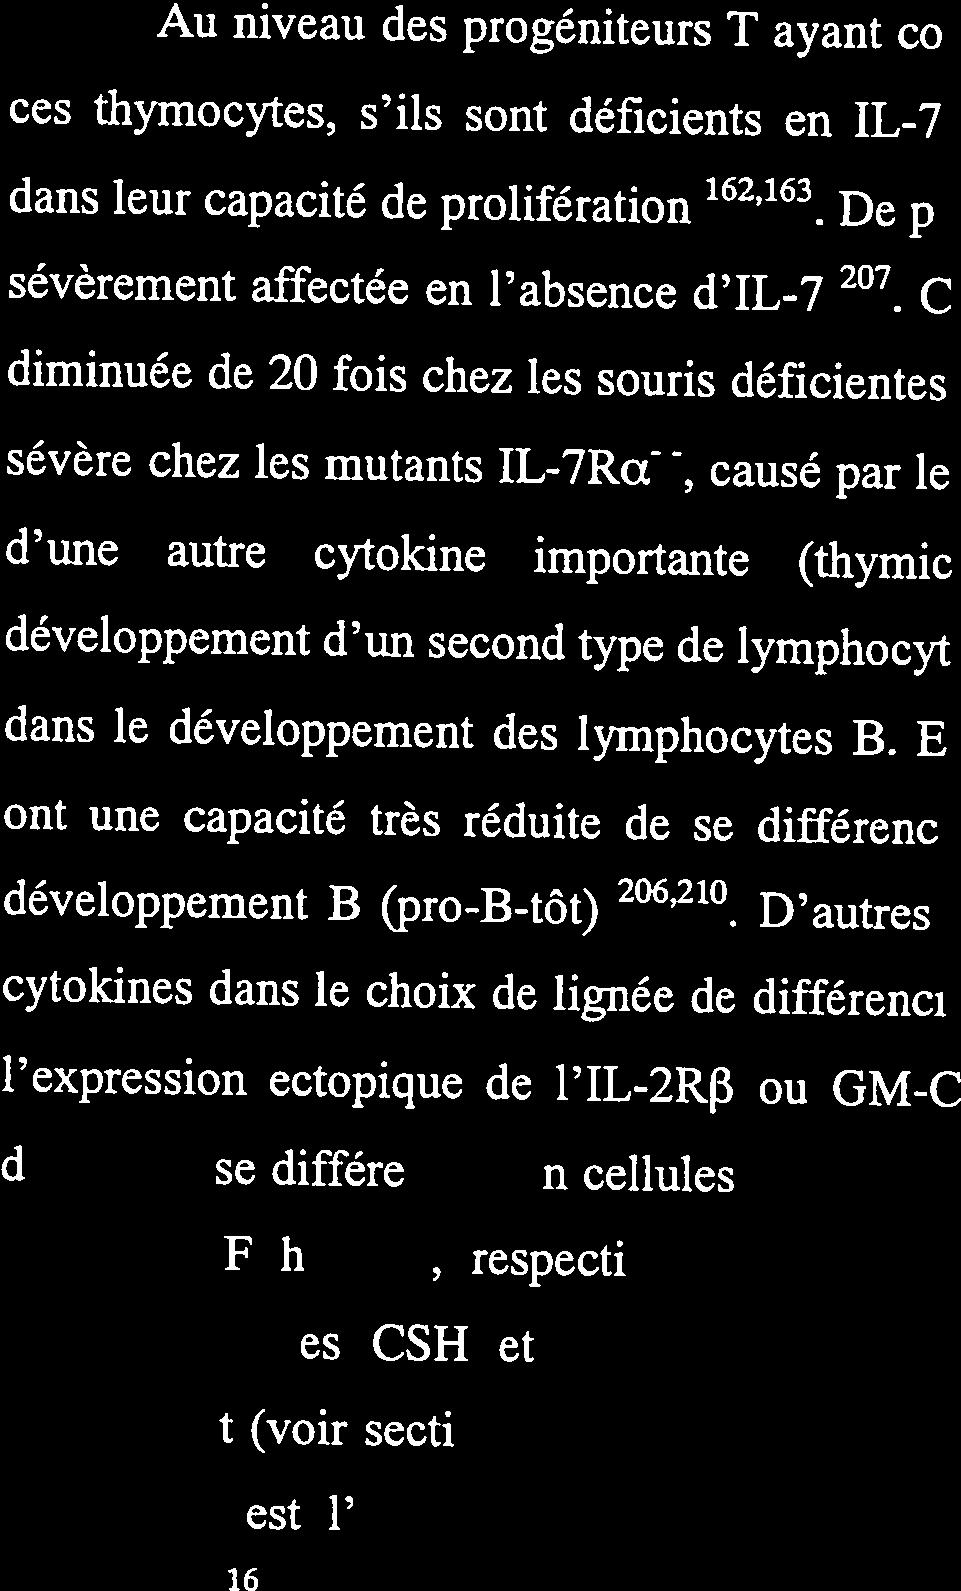 ont une capacité très réduite de se différencier vers le stade le plus immature du développement B (pro-b-tôt) 206,210 D autres exemples font mention de l action de cytokines dans le choix de lignée